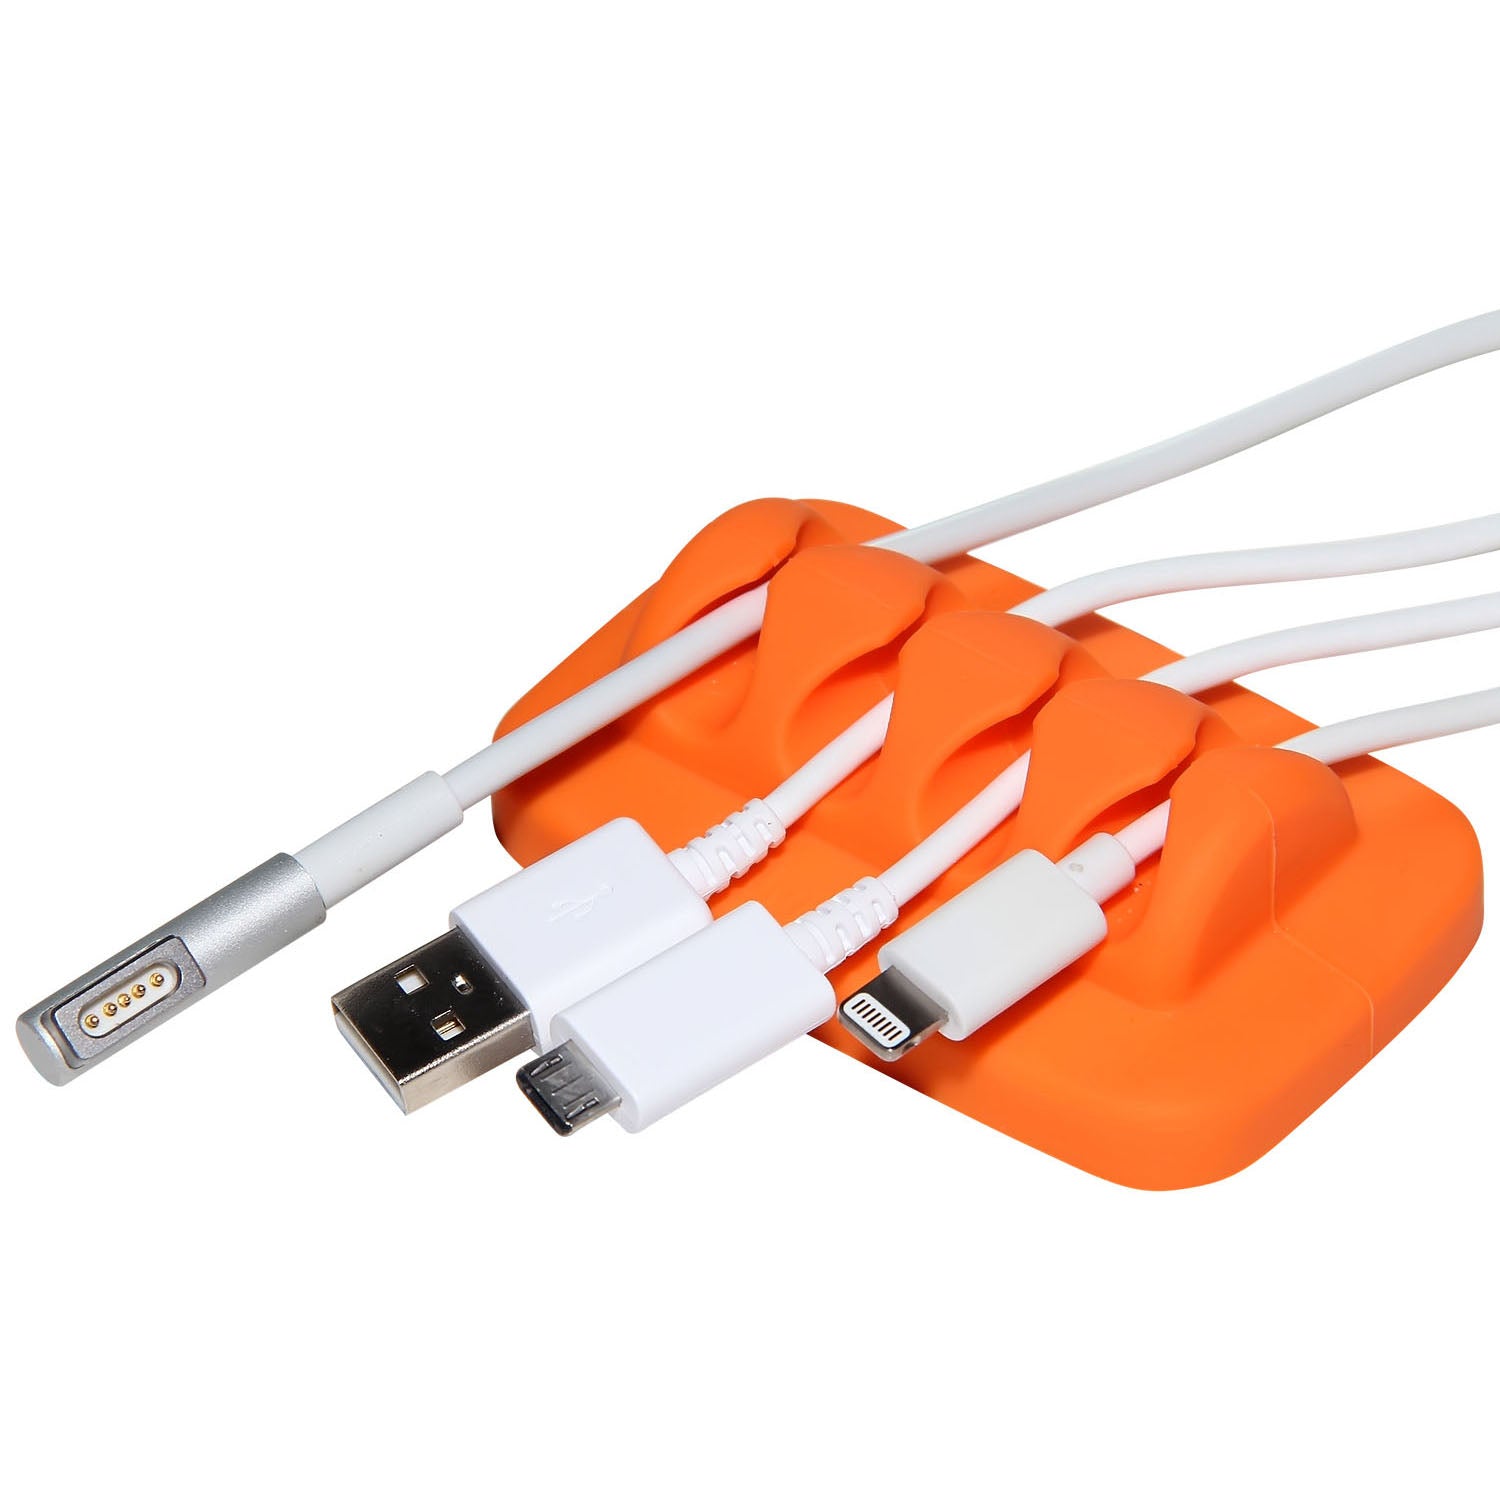 Cable Organizer Orange